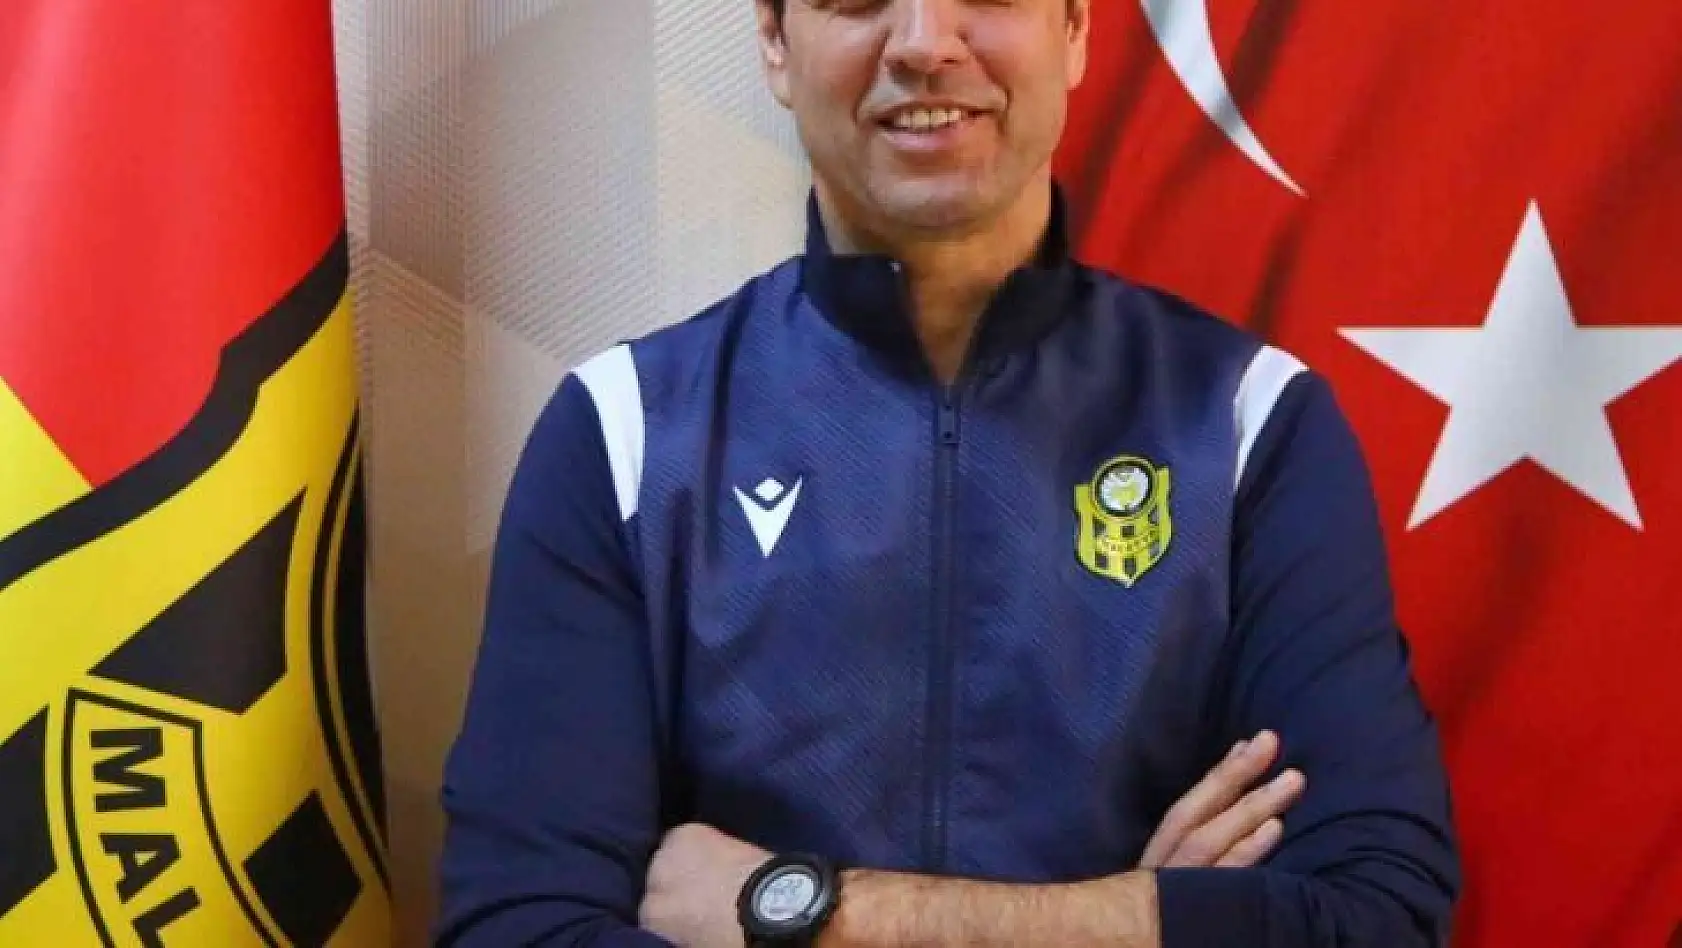 Yeni Malatyaspor, Cihat Arslan ile anlaştı